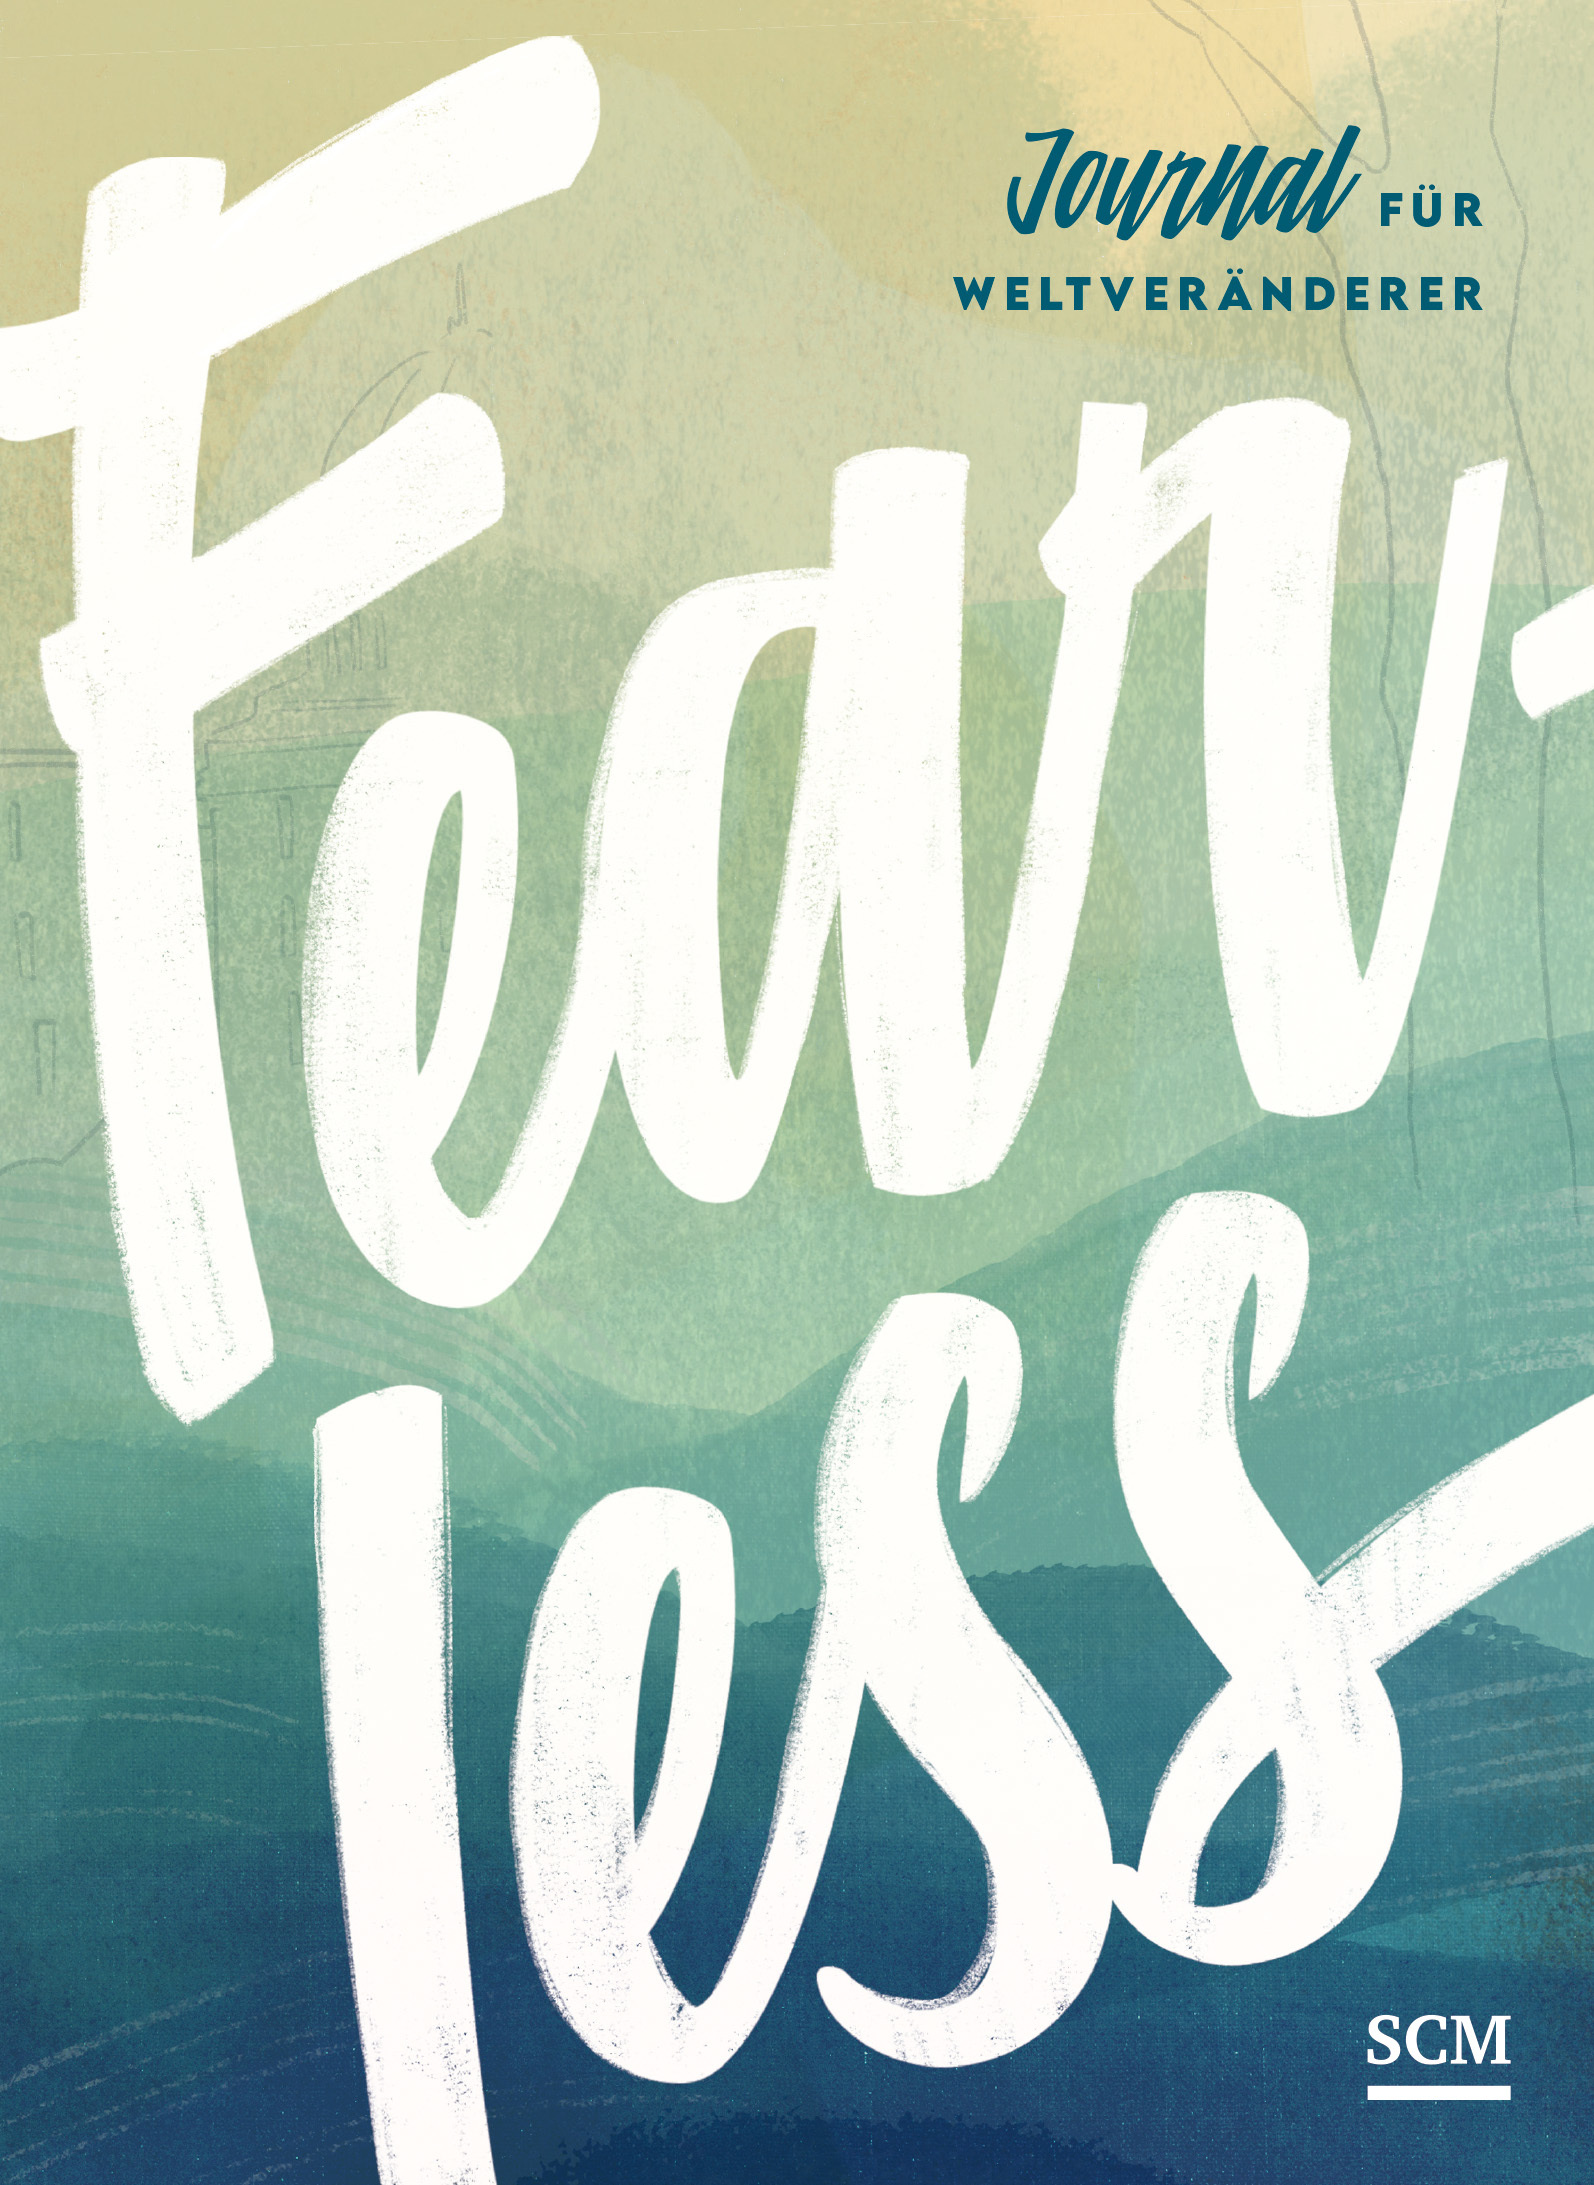 Fearless - Journal für Weltveränderer - Schreibbuch mit Impulsen